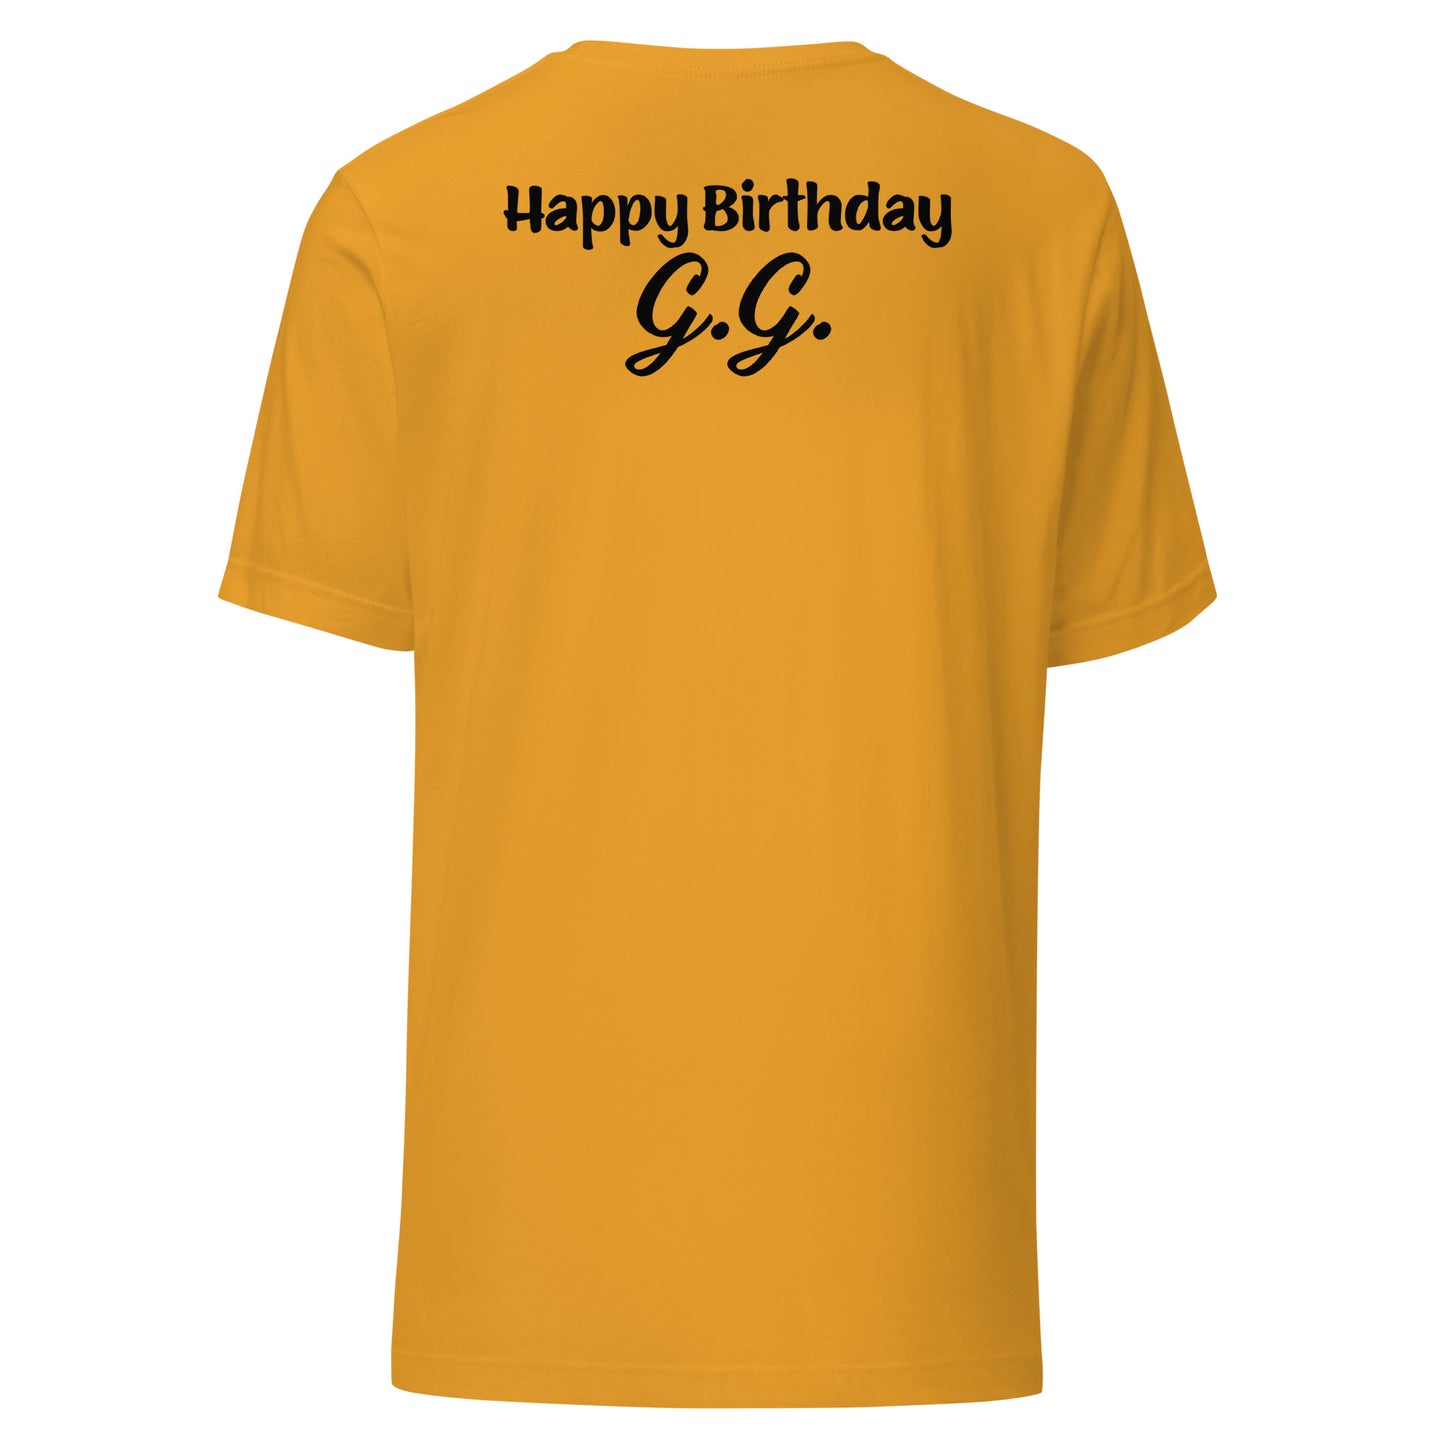 Happy Birthday G.G.